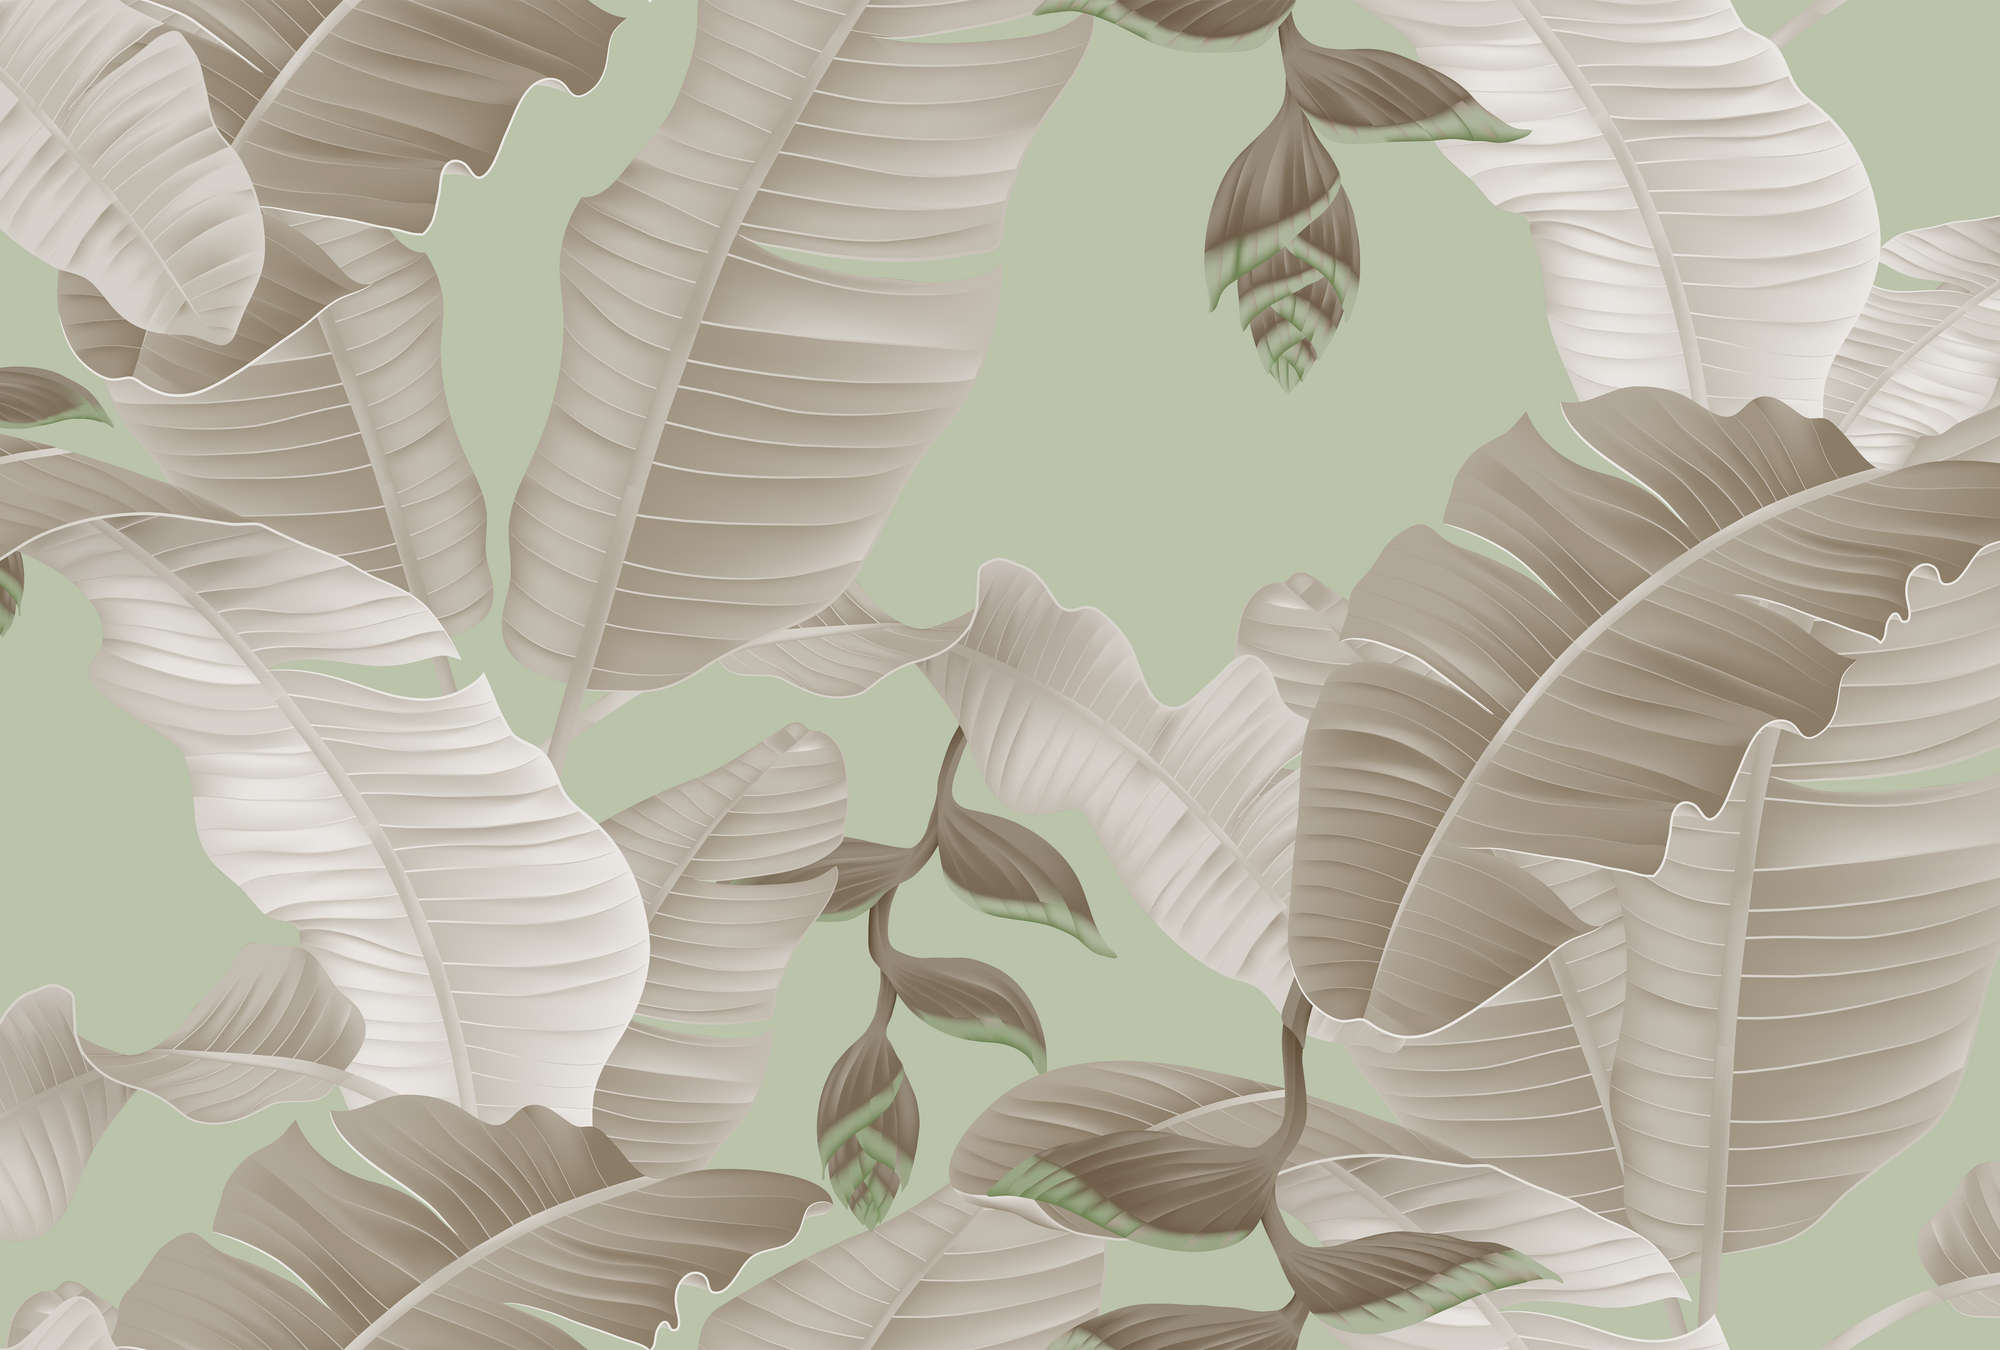             Carta da parati in stile grafico Palm Leaves - Verde, Grigio
        